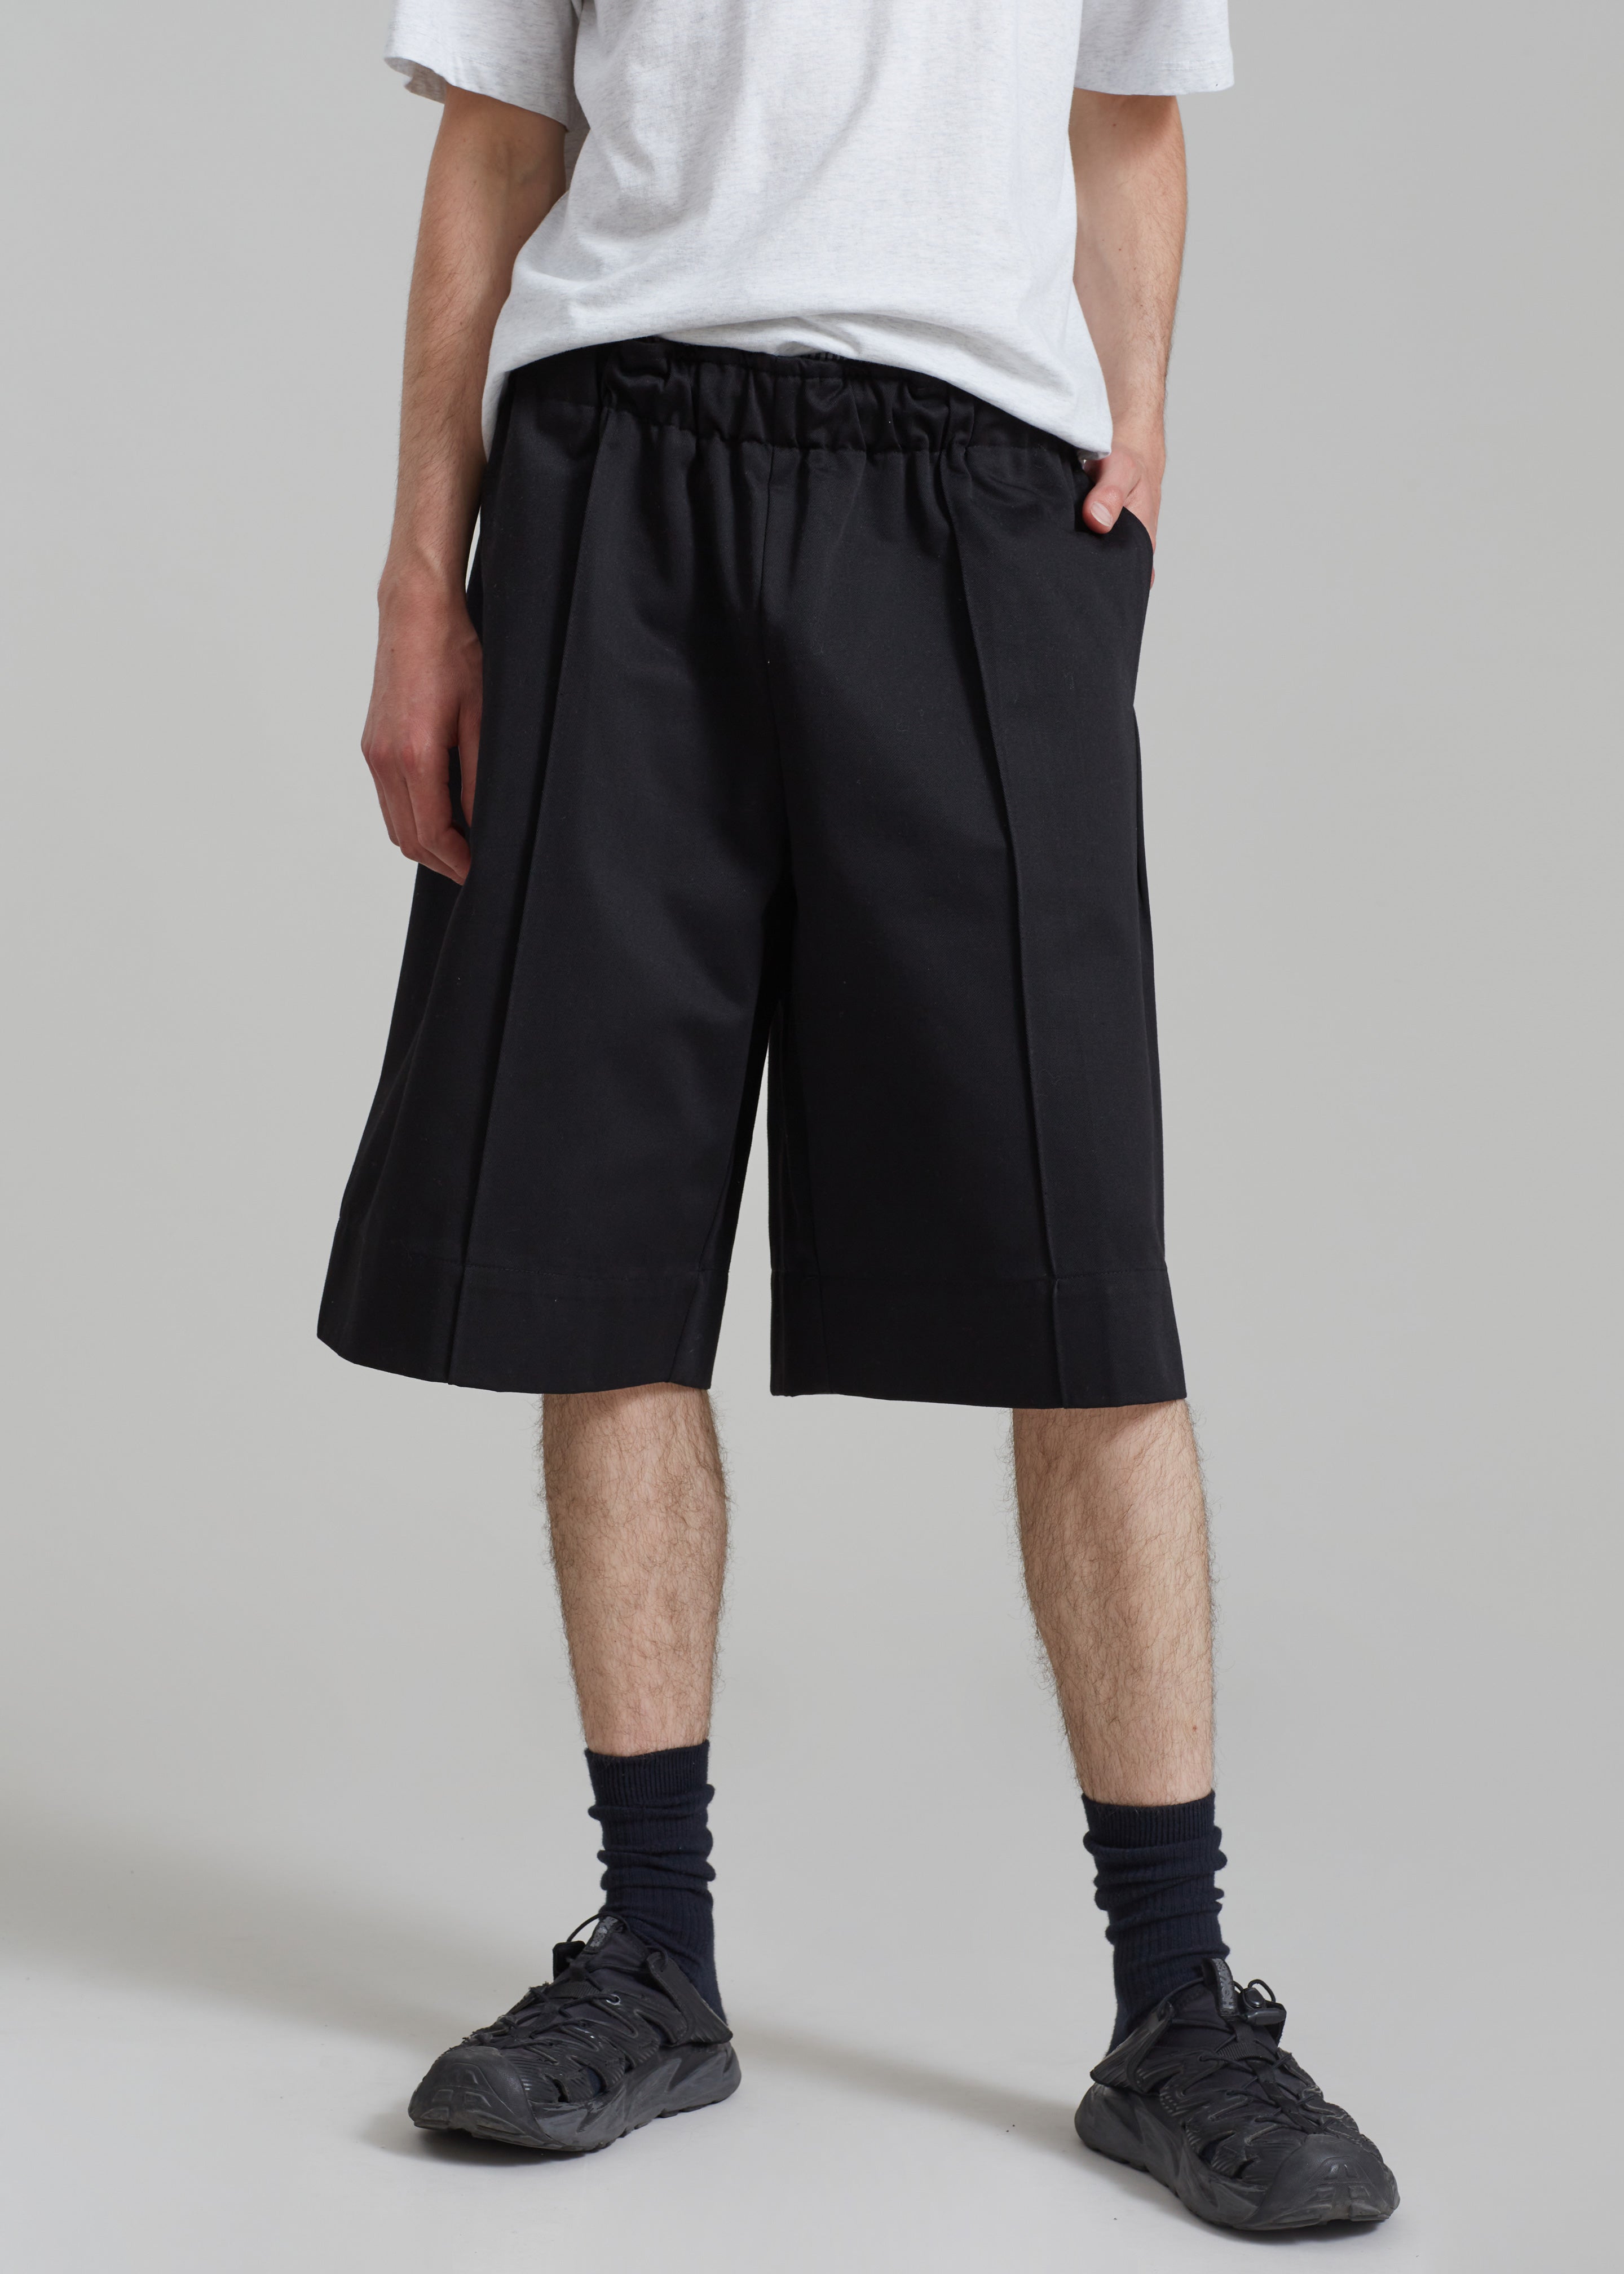 Adan Bermuda Shorts - Black - 5